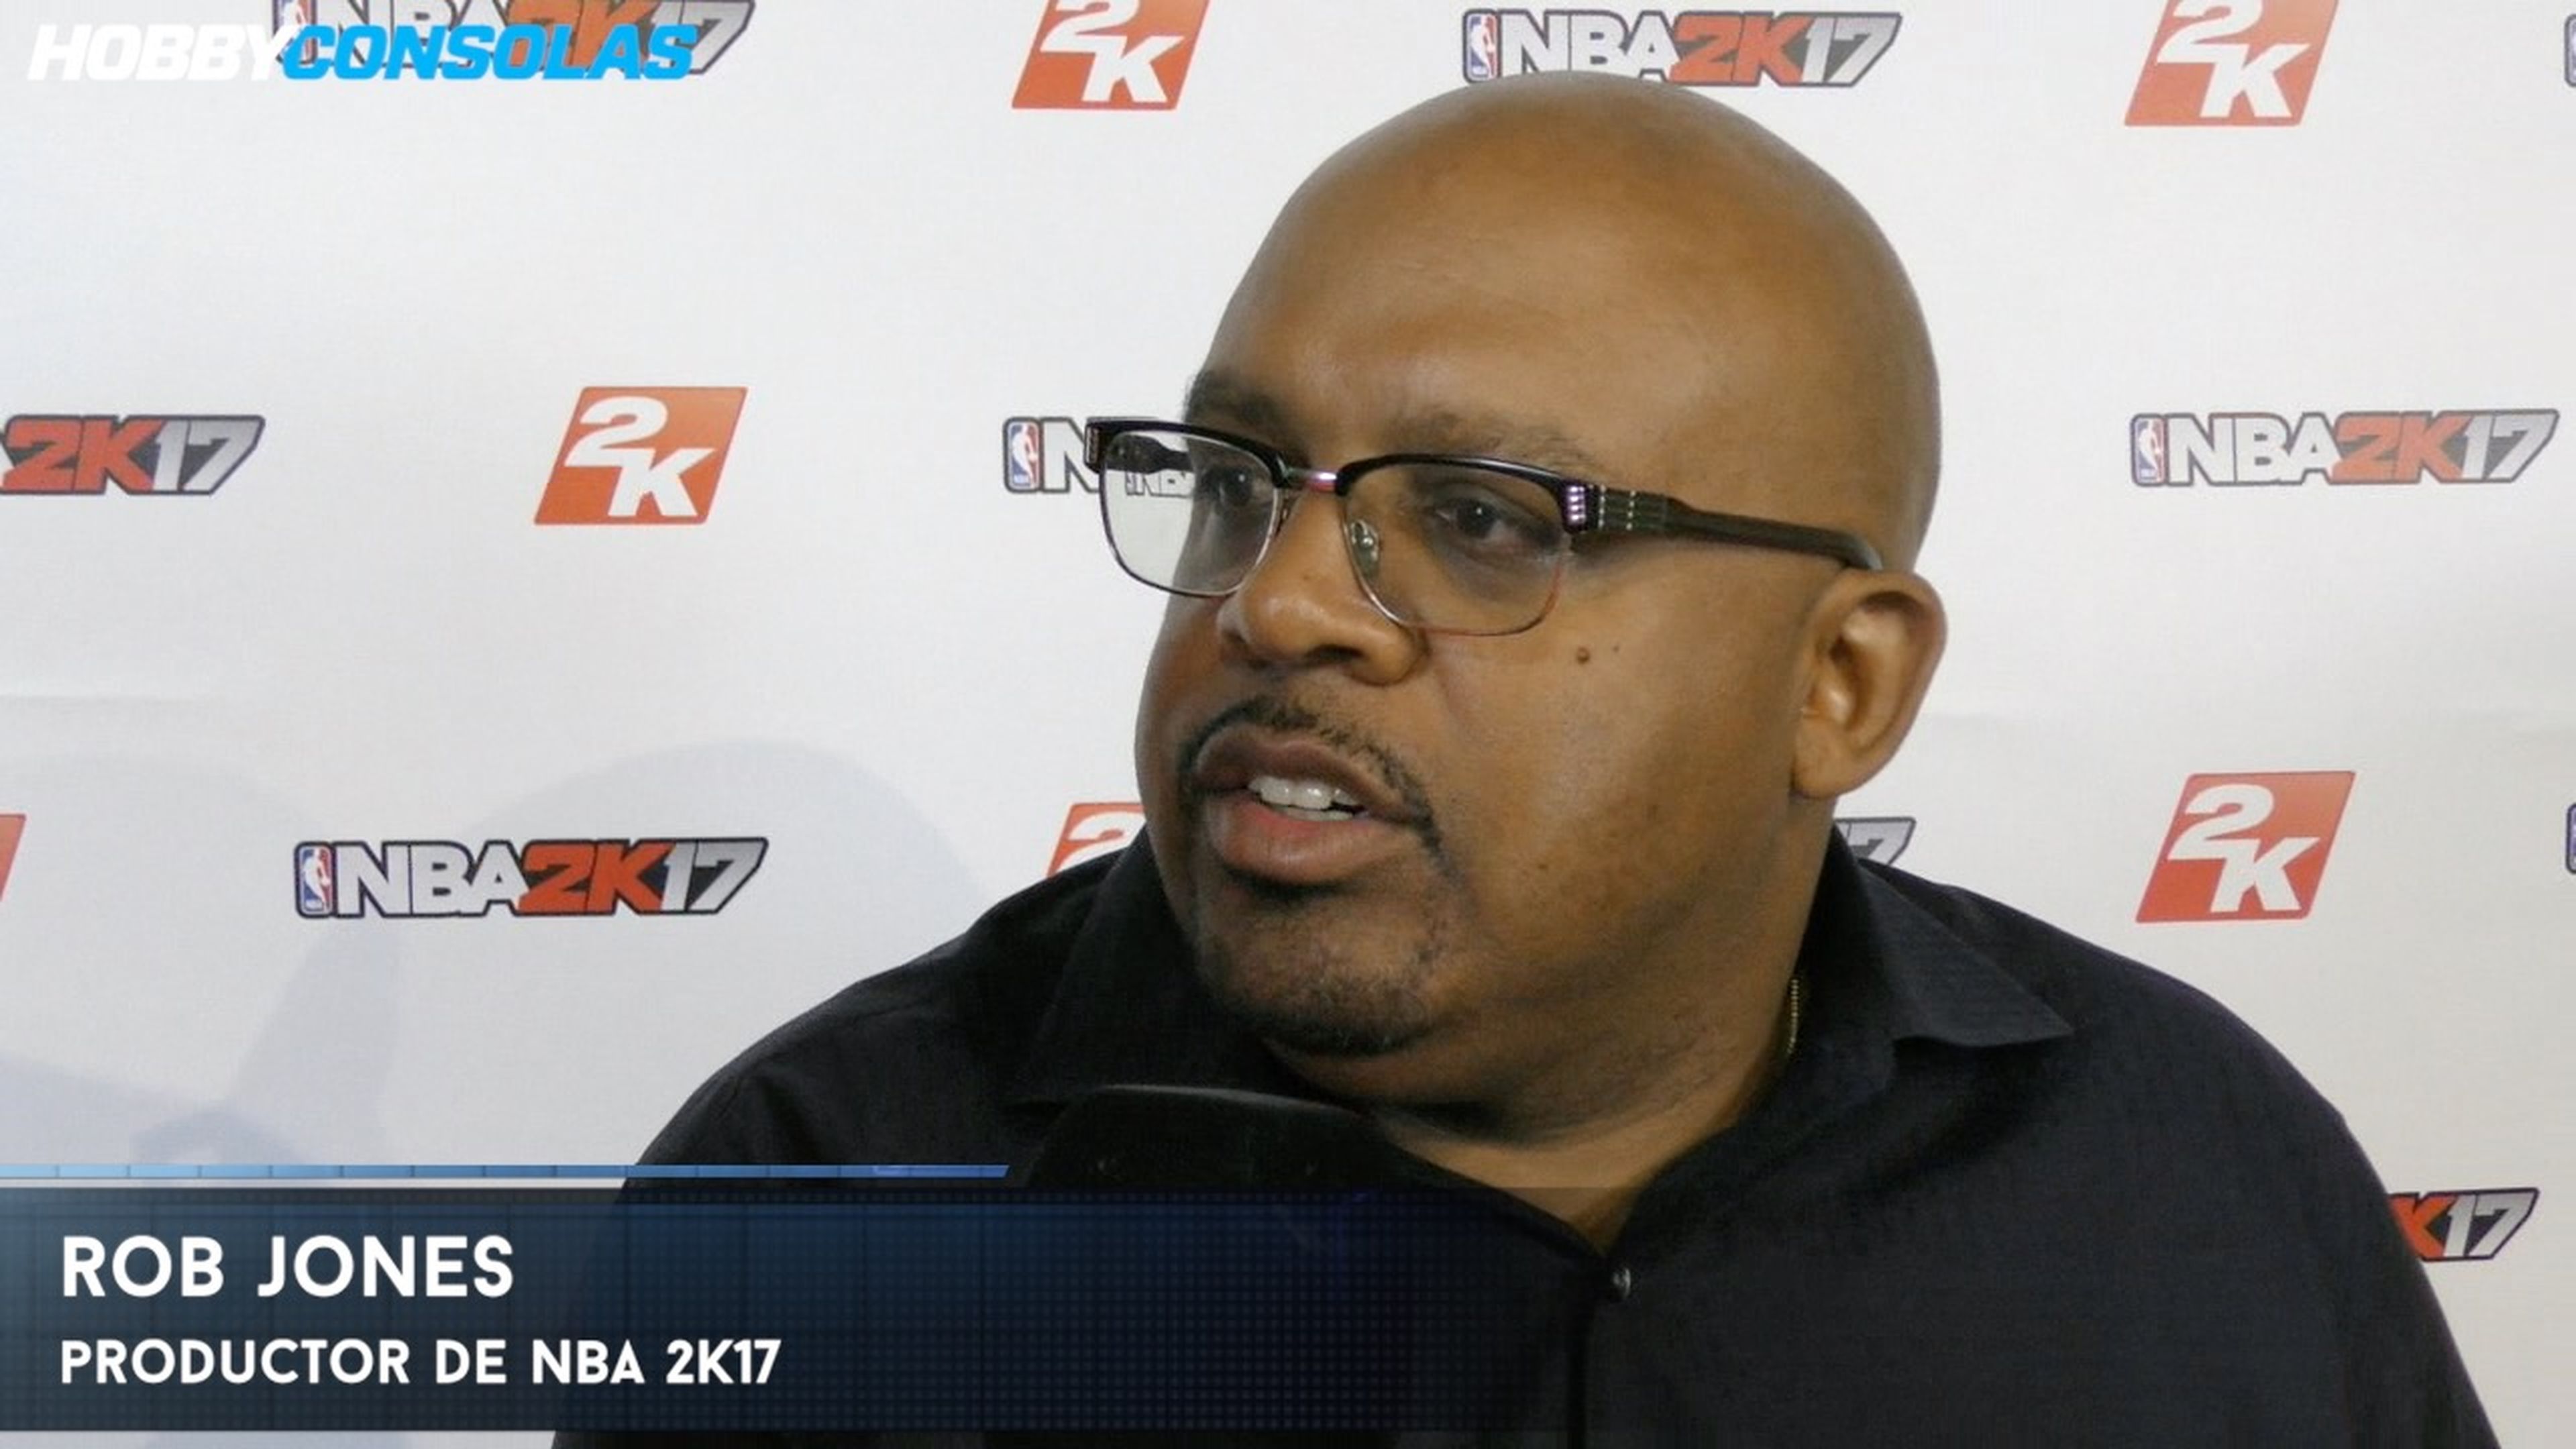 Entrevista a Rob Jones, productor de NBA 2K17